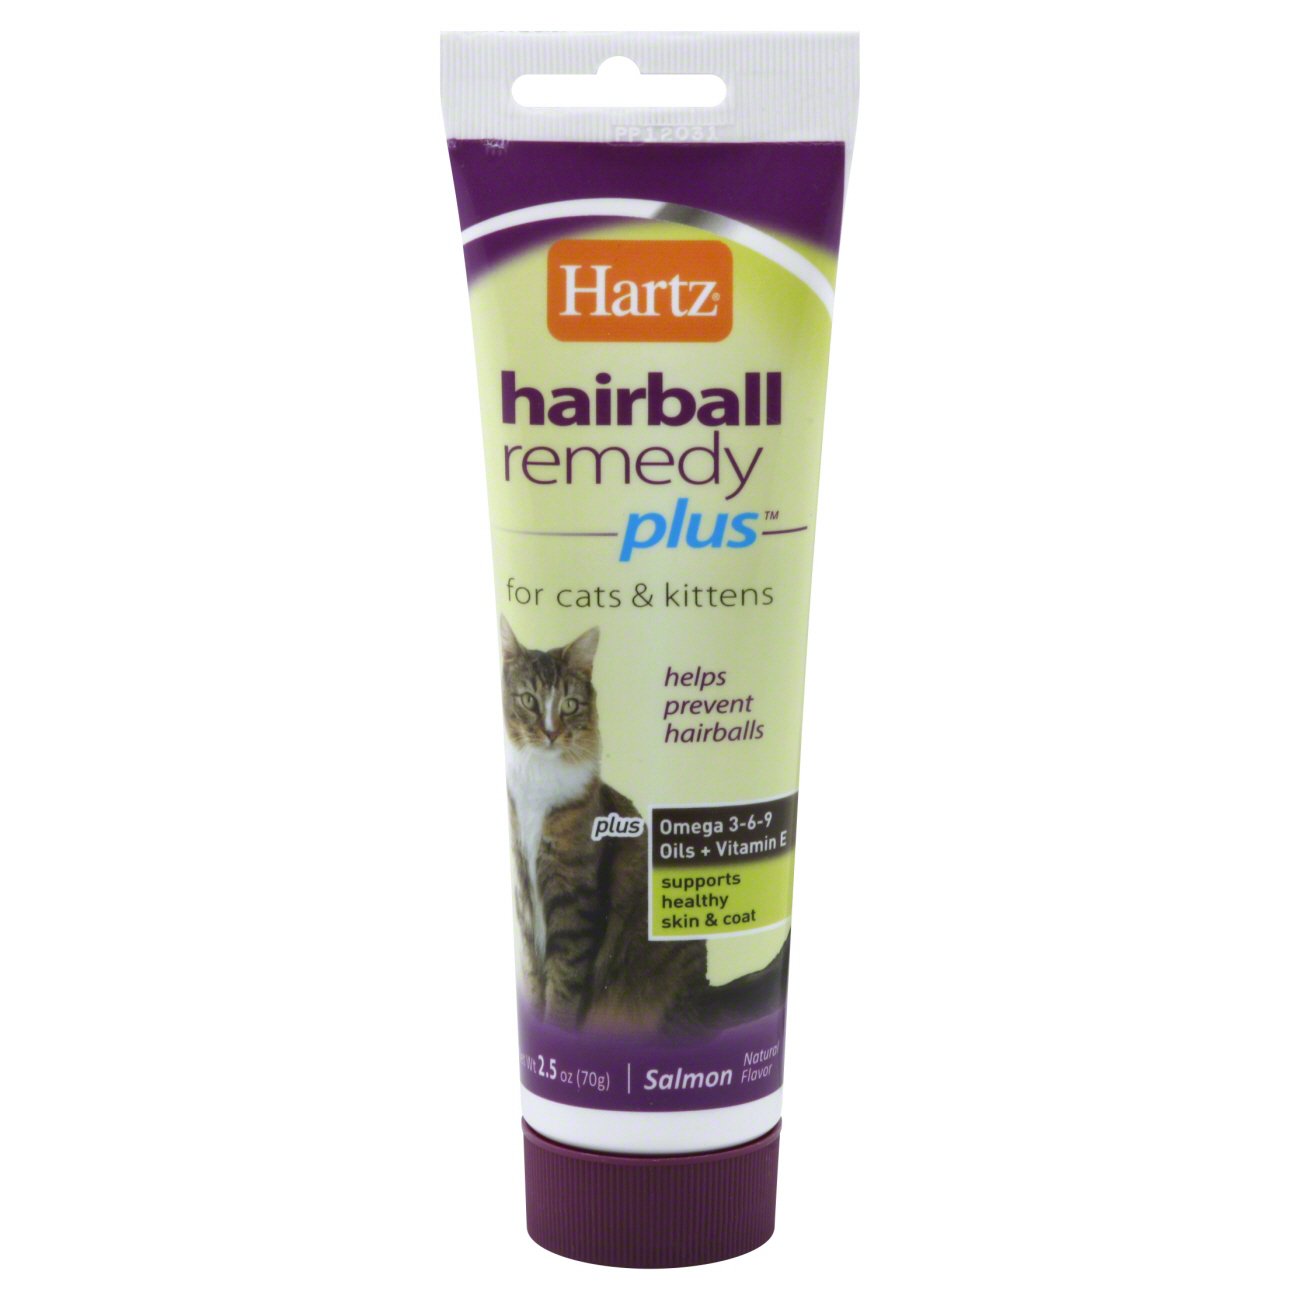 hartz hairball remedy